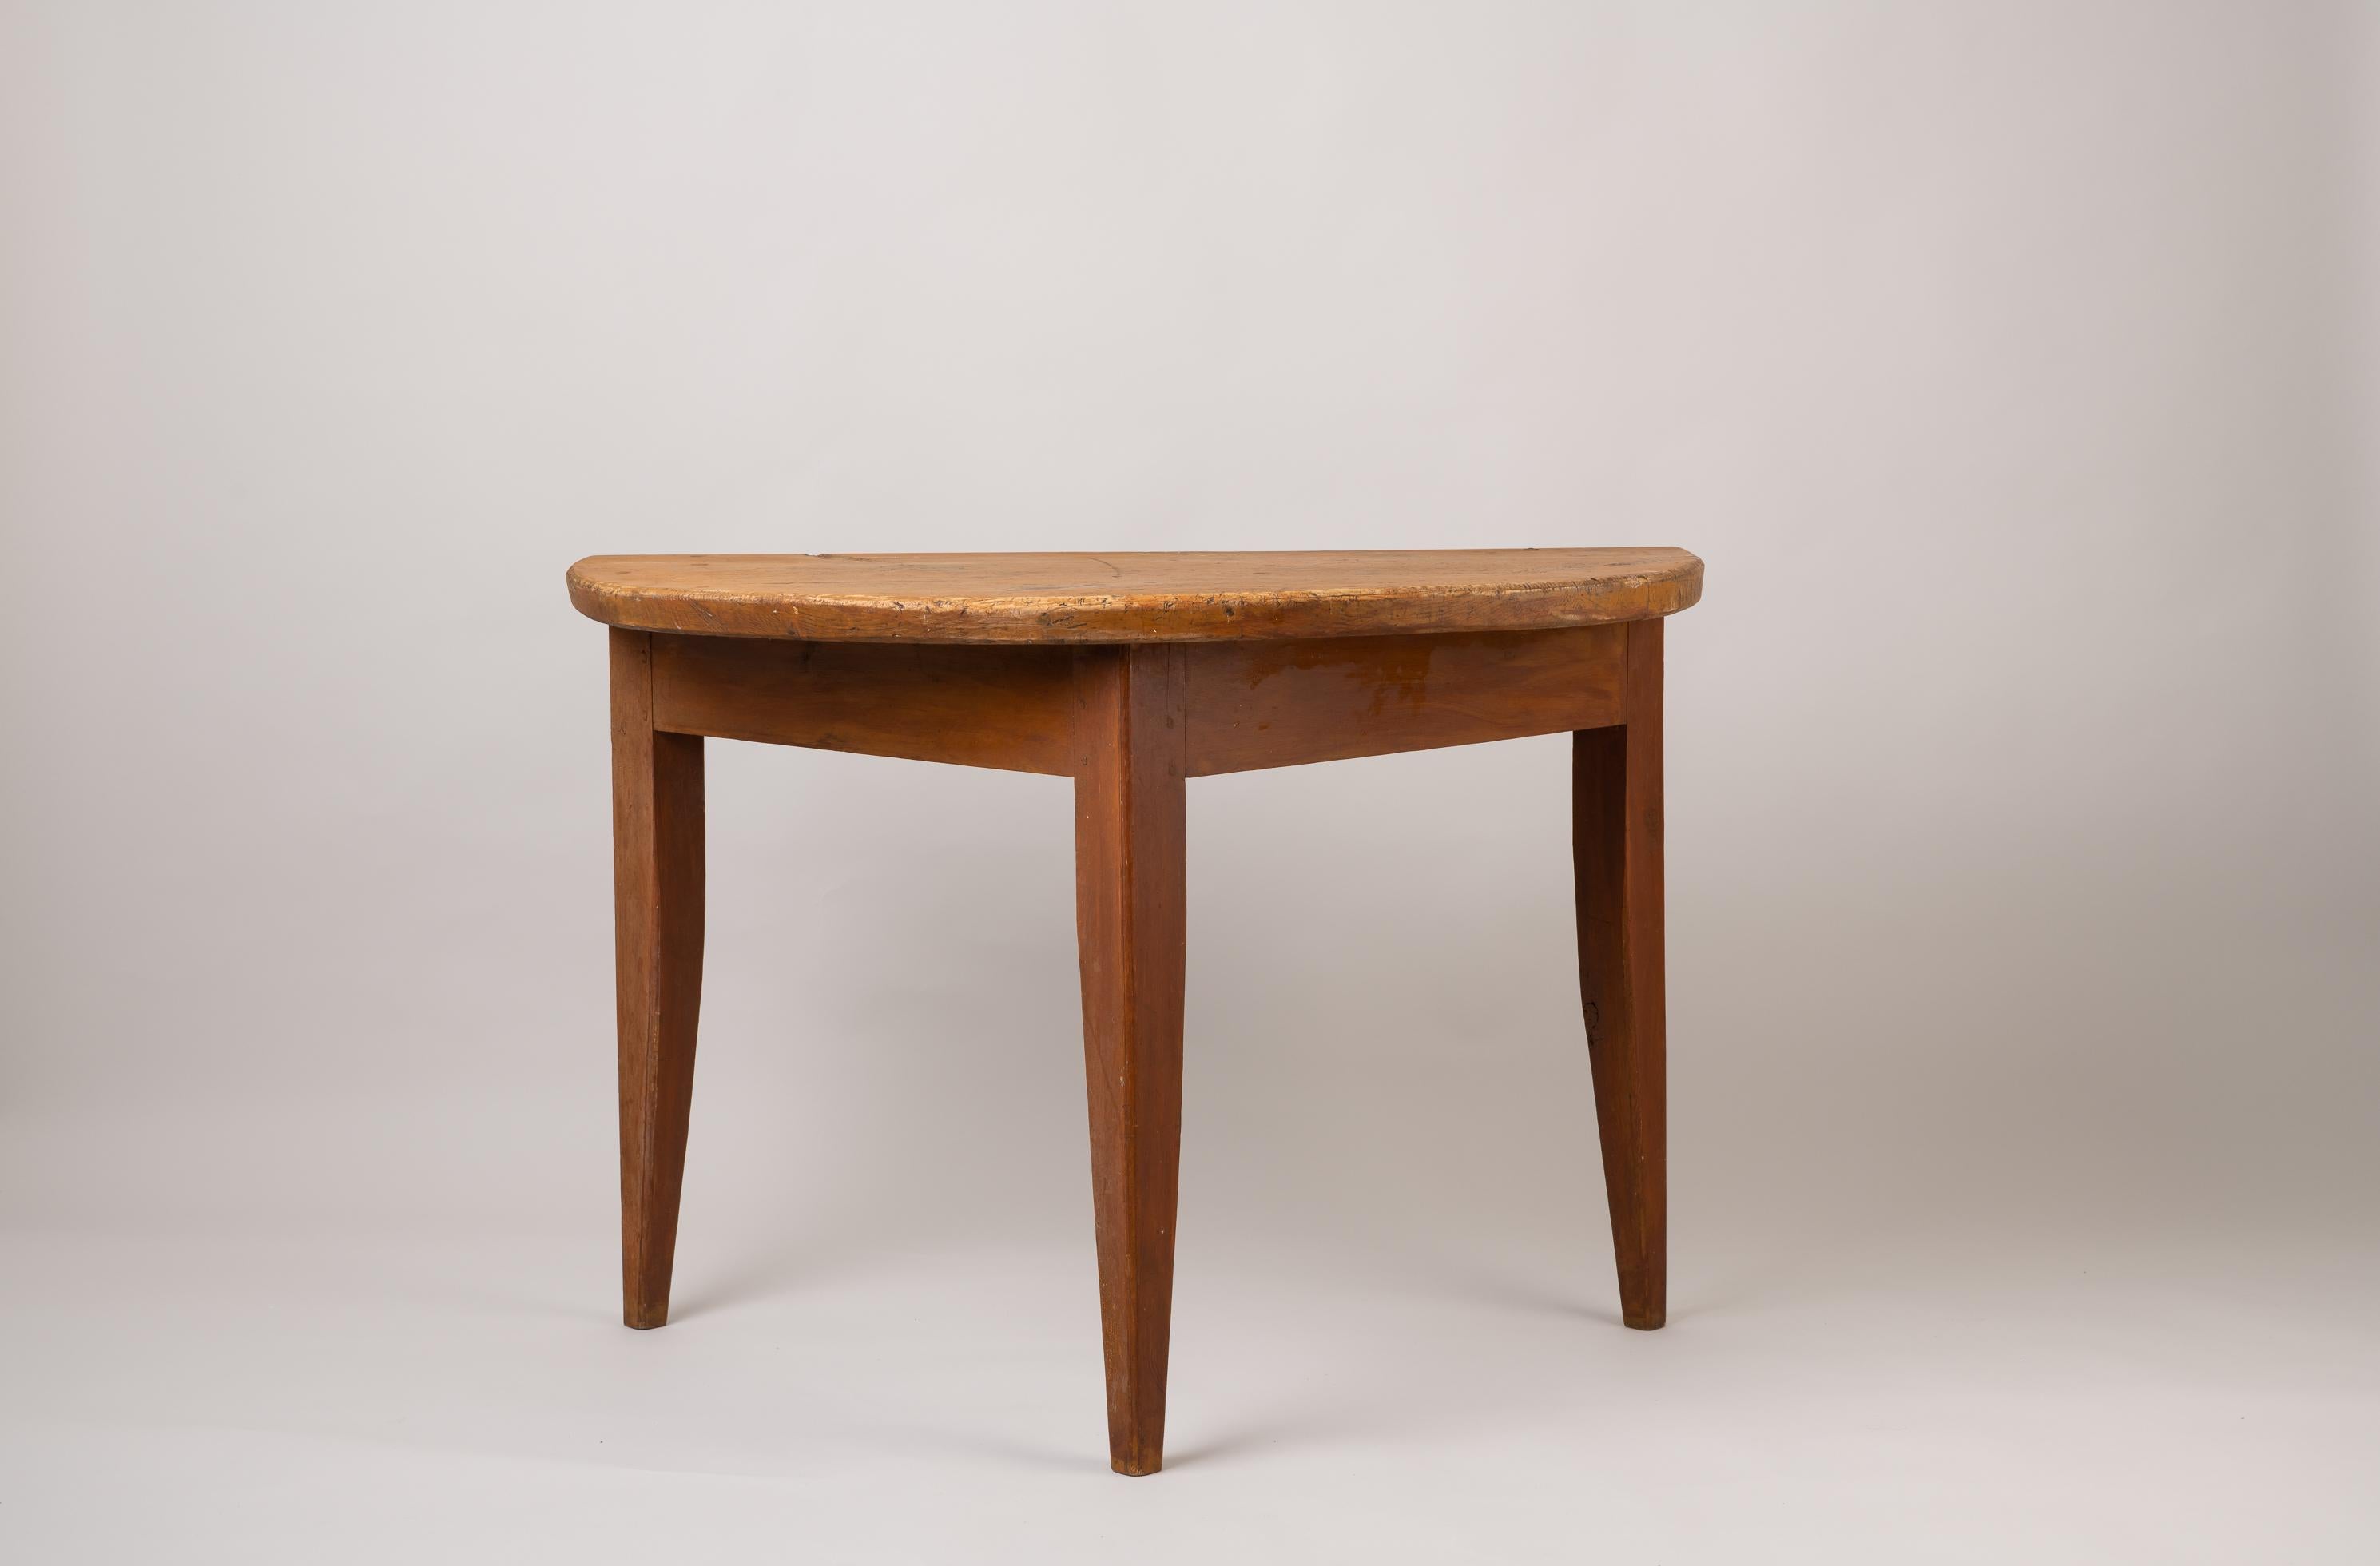 Schwedische Volkskunst Konsole oder Wandtisch. Der Tisch ist im Originalzustand mit Originallack, der nach jahrelangem Gebrauch natürlich abgenutzt ist. Hergestellt in Nordschweden, ca. 1790-1800. Gesunder und solider Rahmen. Ungewöhnlich dicke